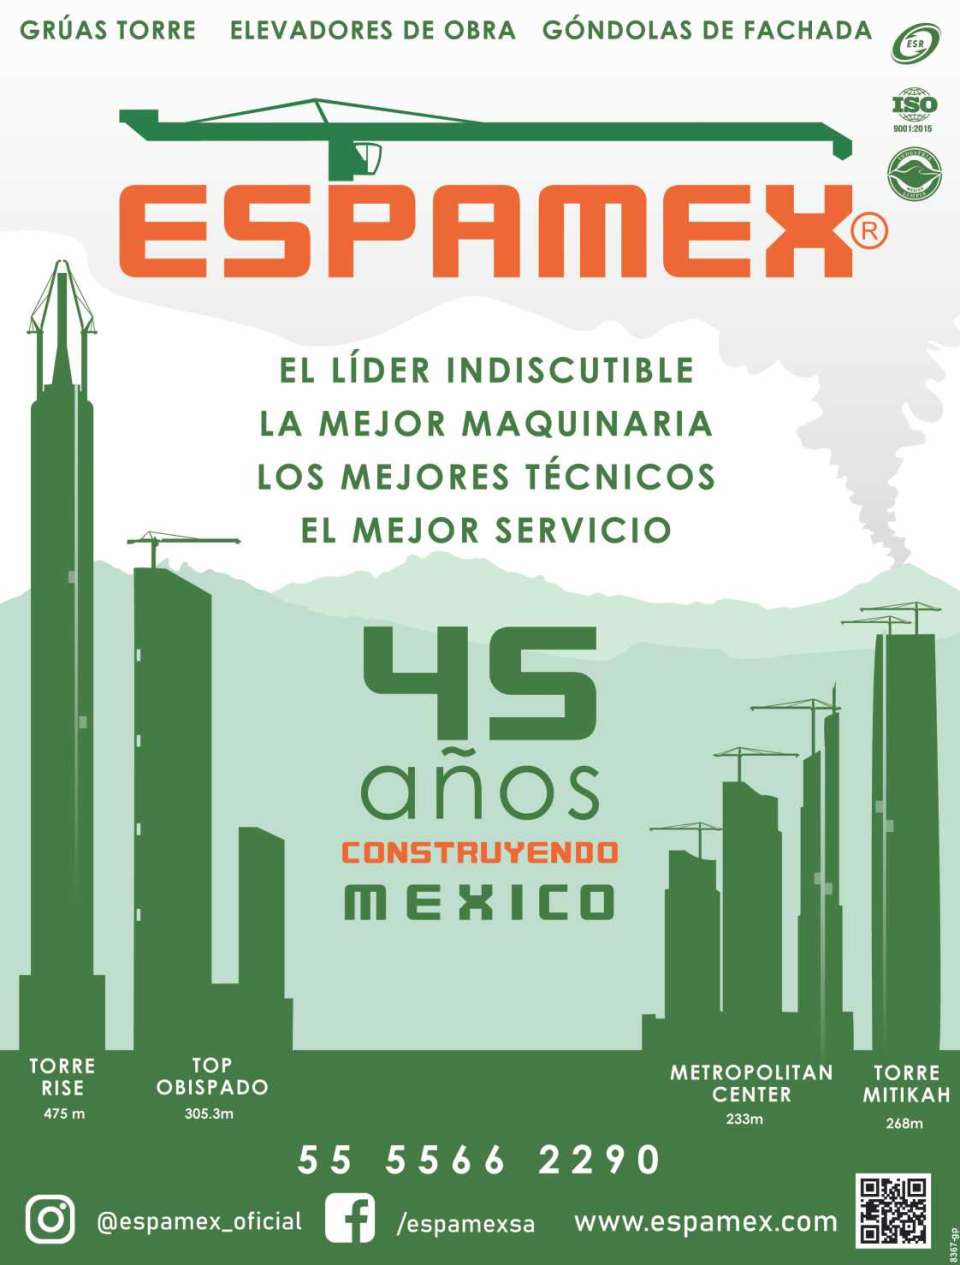 Gruas Torre, Elevadores de Obra, Gondolas de Fachada. Gracias a su Confianza, el 80% de las Torres mas altas de Mexico, se han construido con Equipos Espamex. 45 Años Construyendo Mexico.